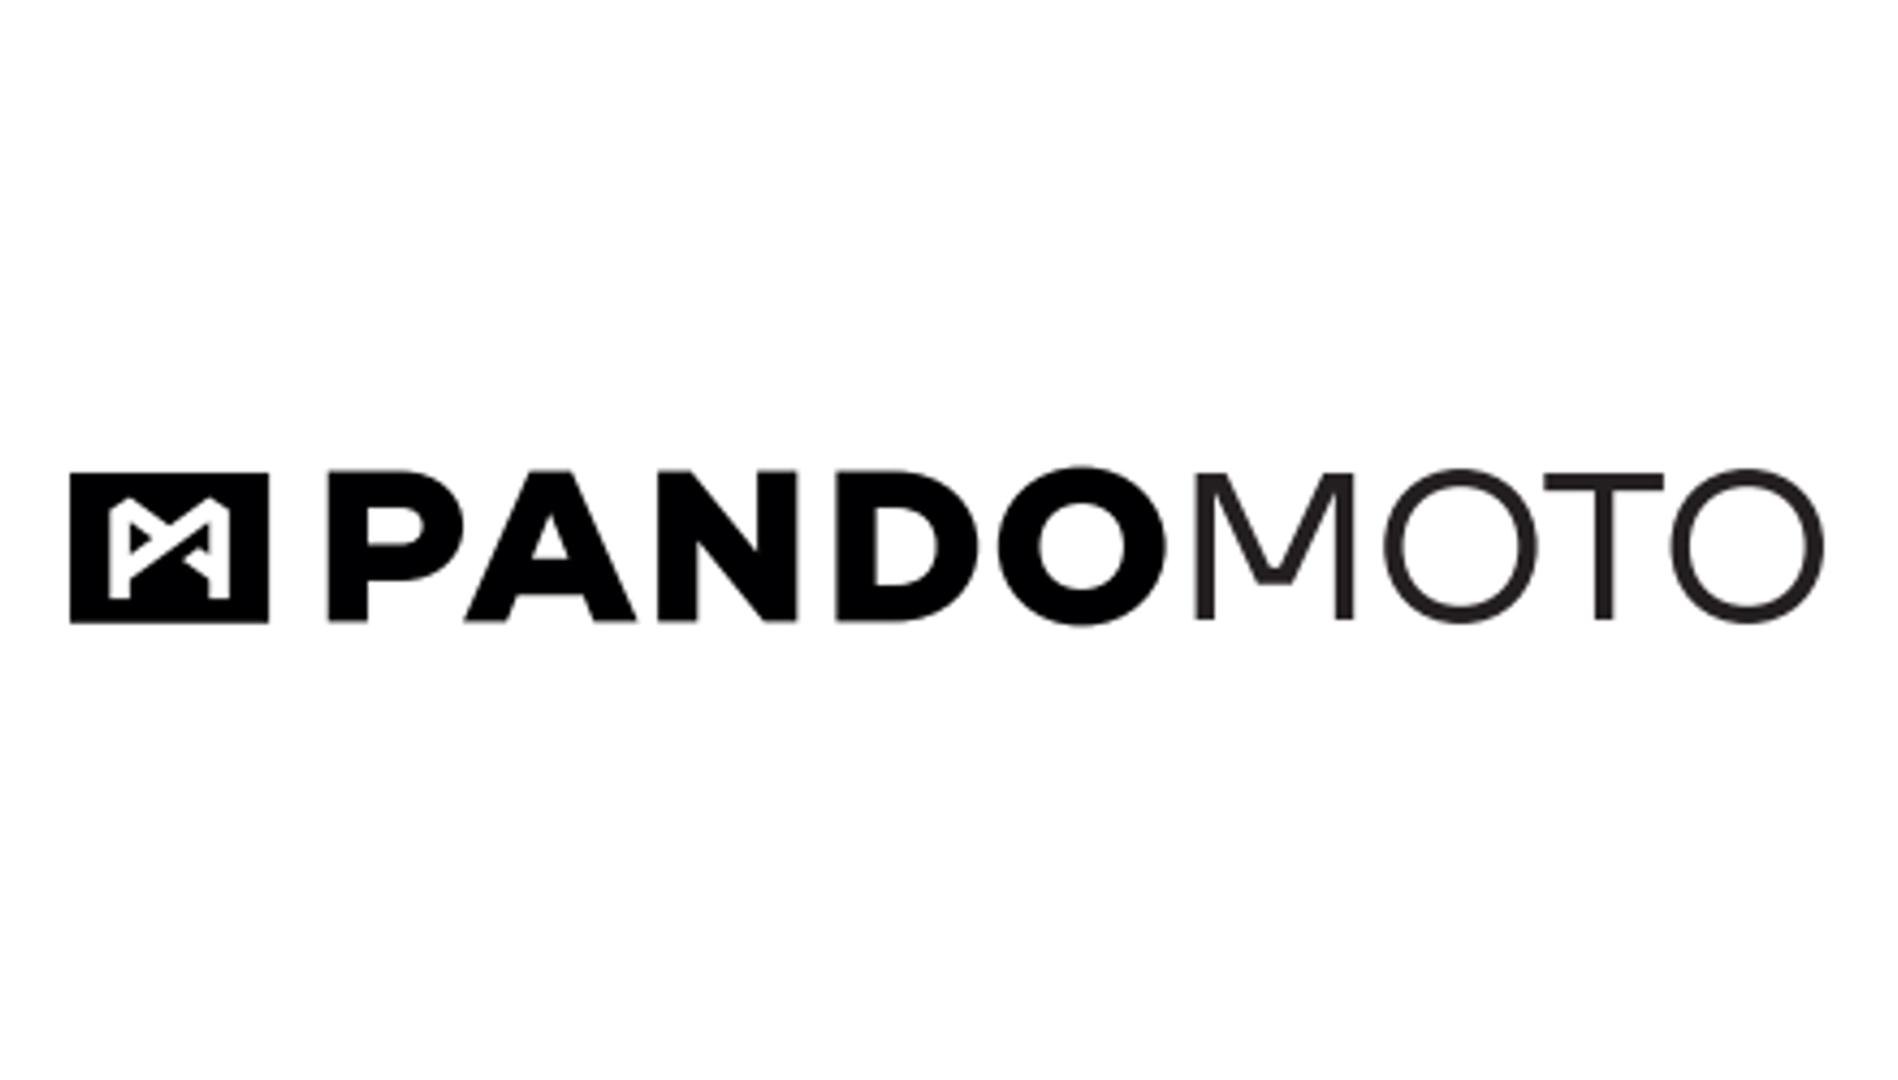 pando-moto-PANDO MOTO.jpg